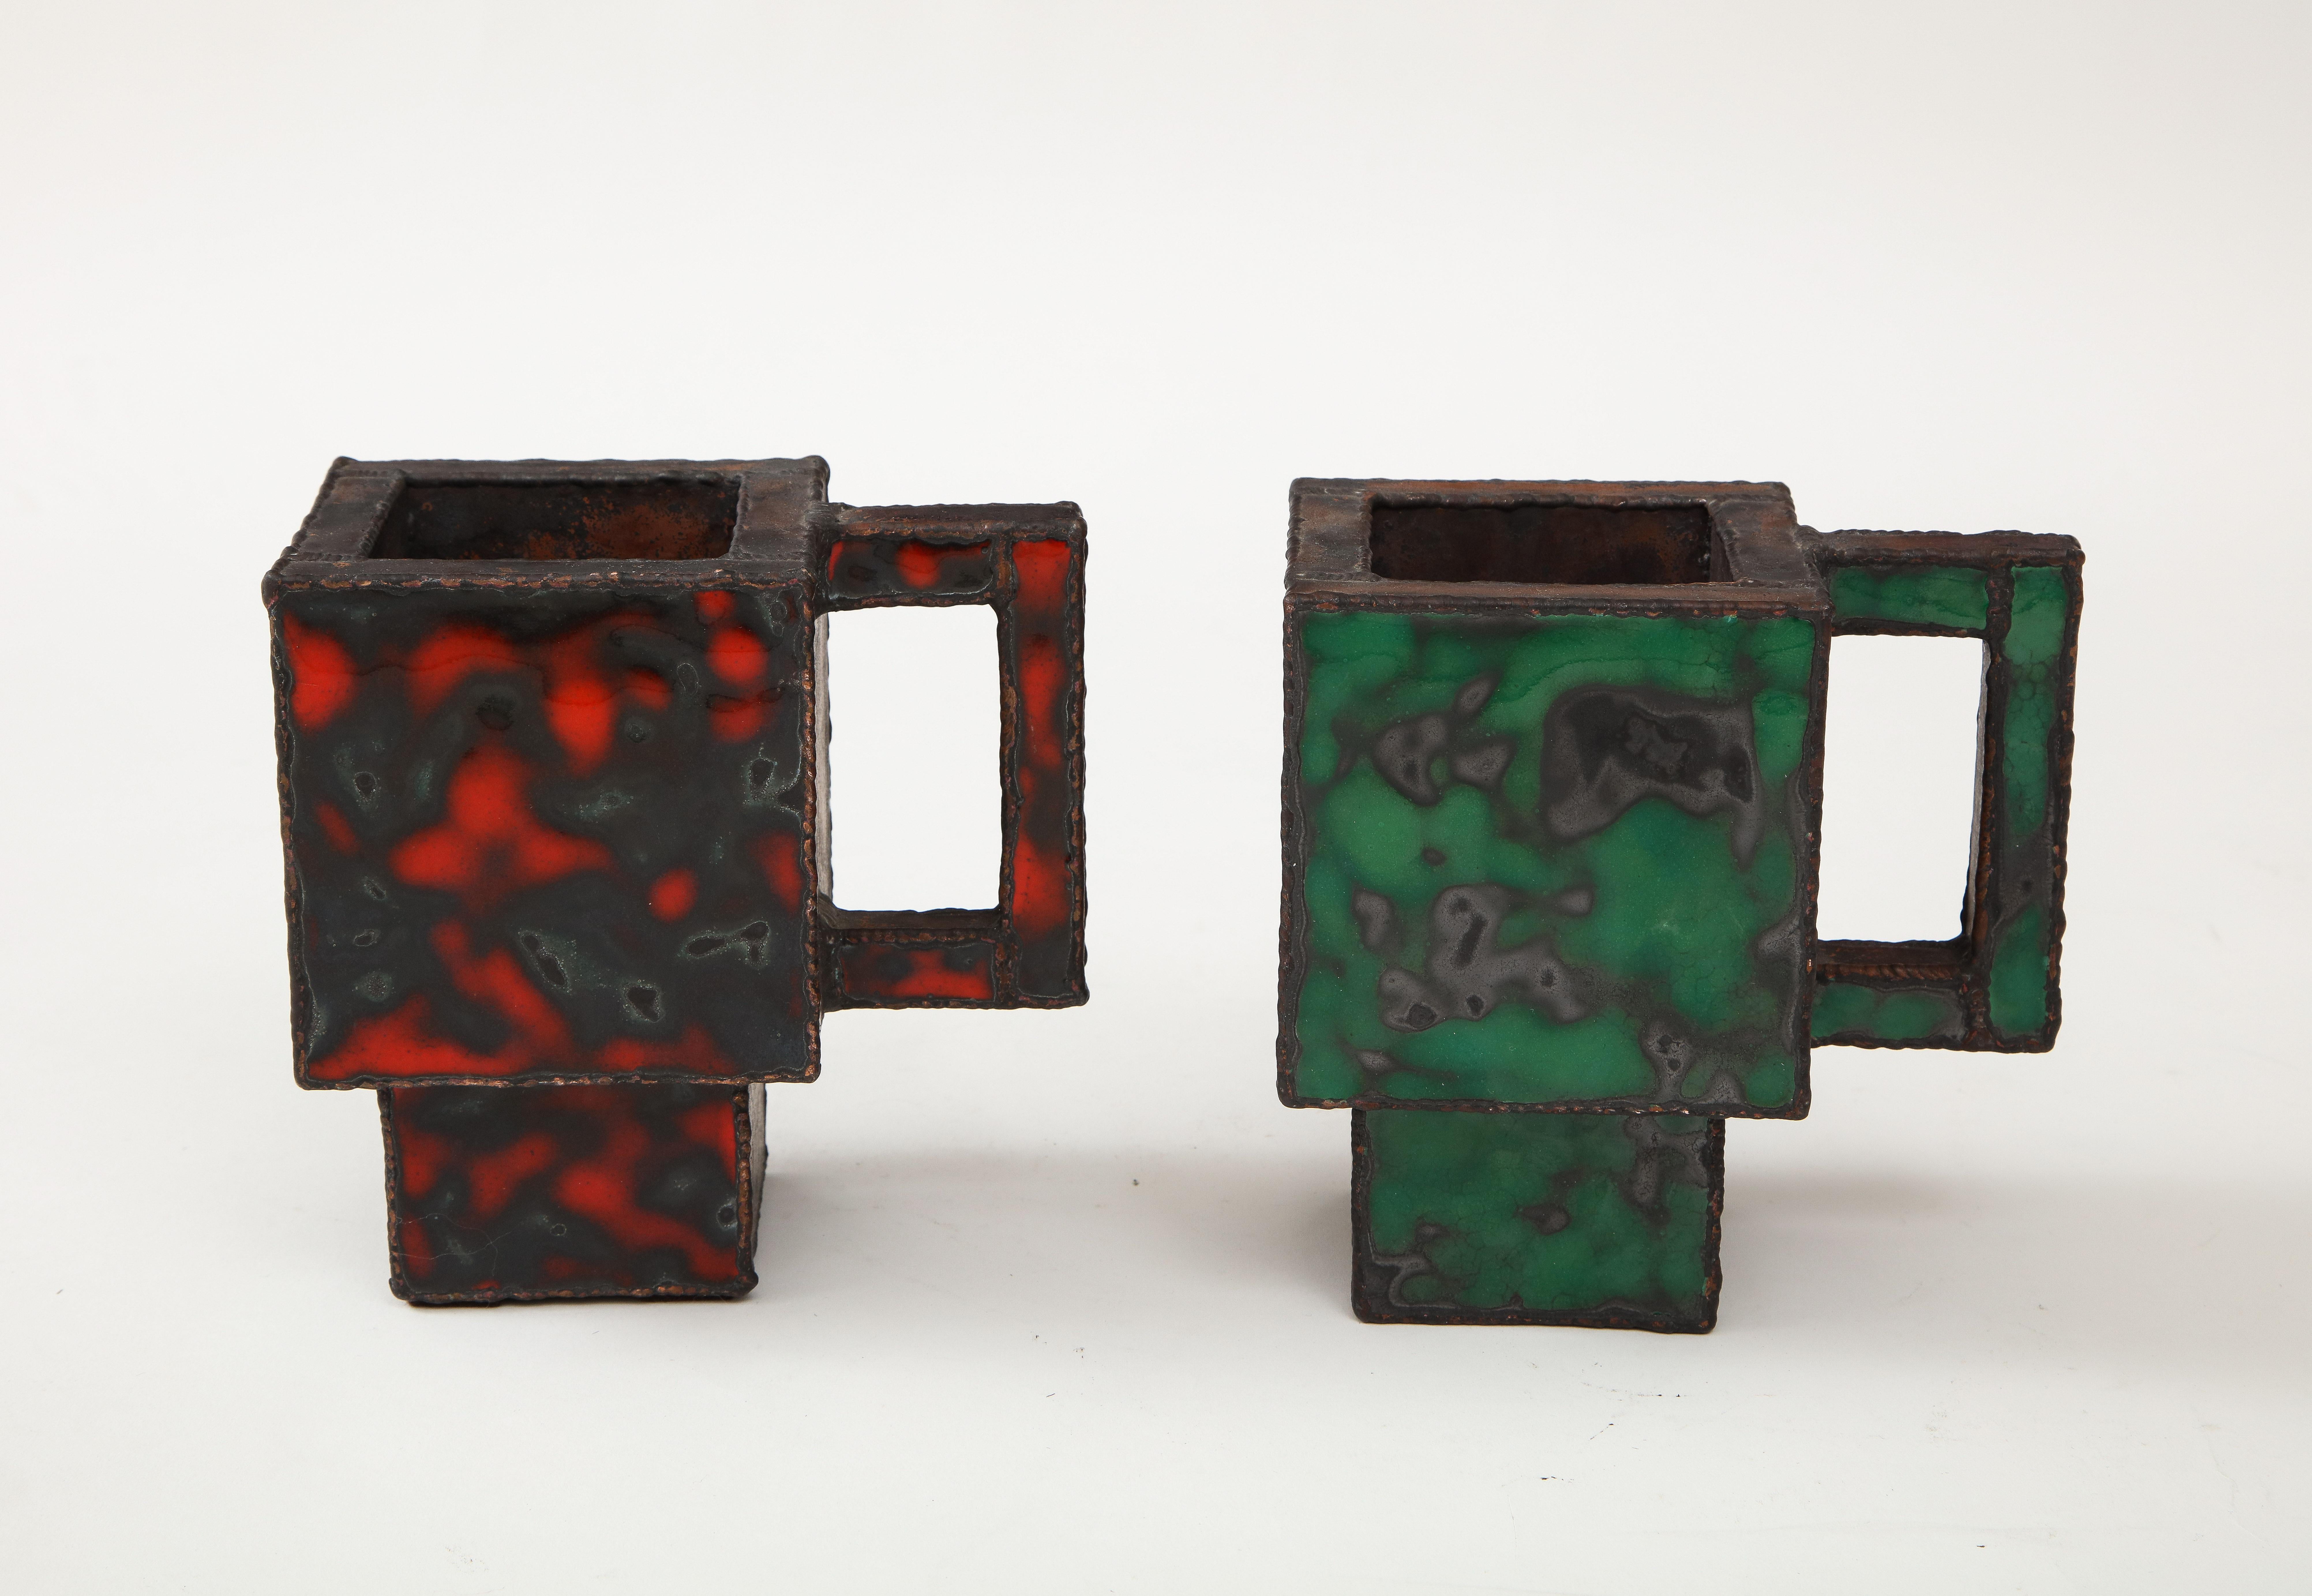 Zwei emaillierte Kupferbecher des südkoreanischen Künstlers Kwangho Lee mit hohem Sammlerwert. 

Mit ihrem atemberaubenden und explosiven Design sind diese Kupferbecher ein nahezu perfektes Beispiel für Lees Sensibilität für das Medium Emaille -